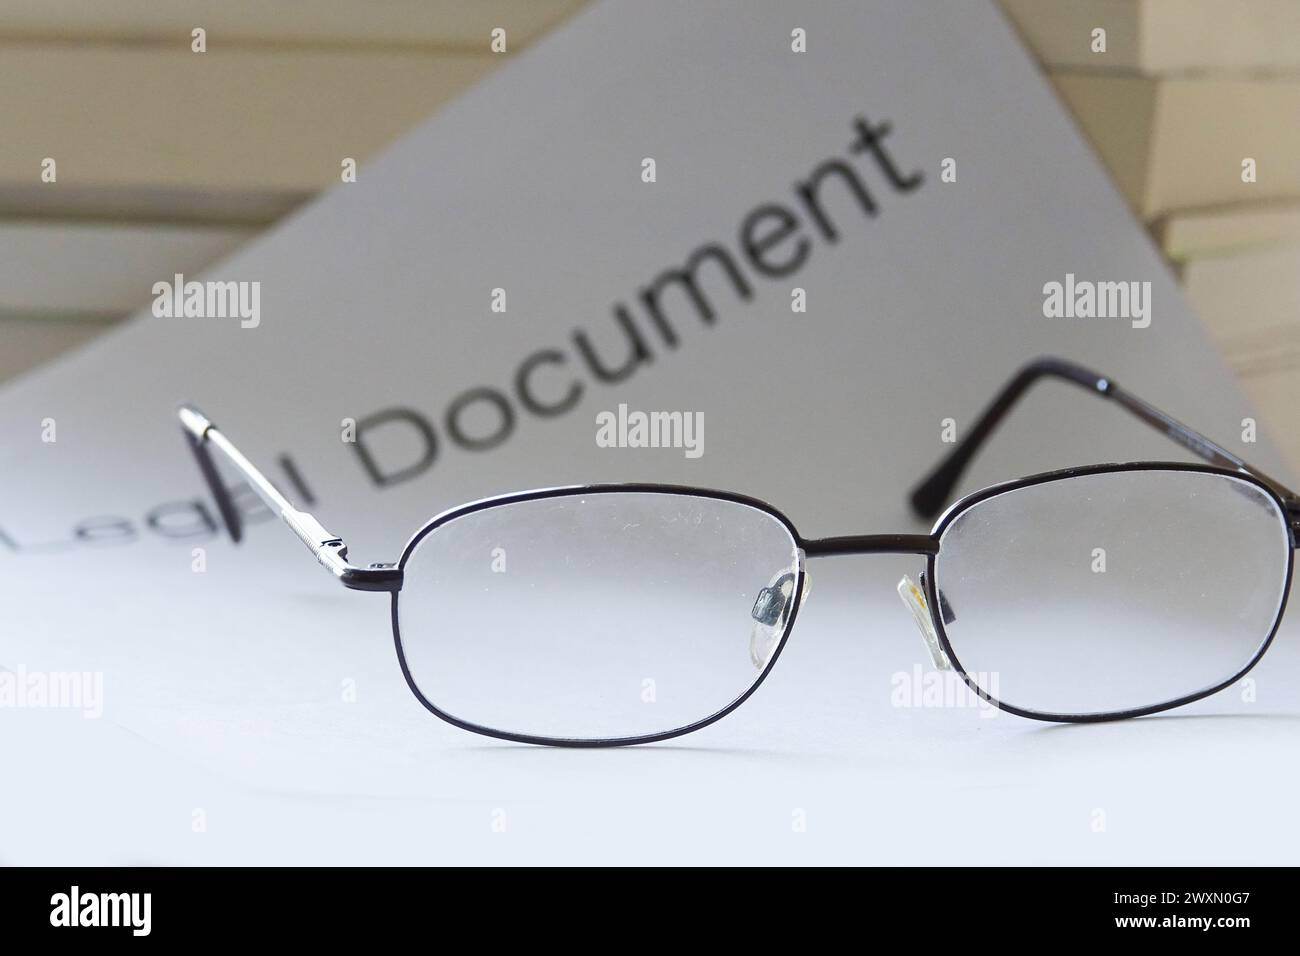 Eine Nahaufnahme einer Brille auf einem juristischen Dokument Stockfoto